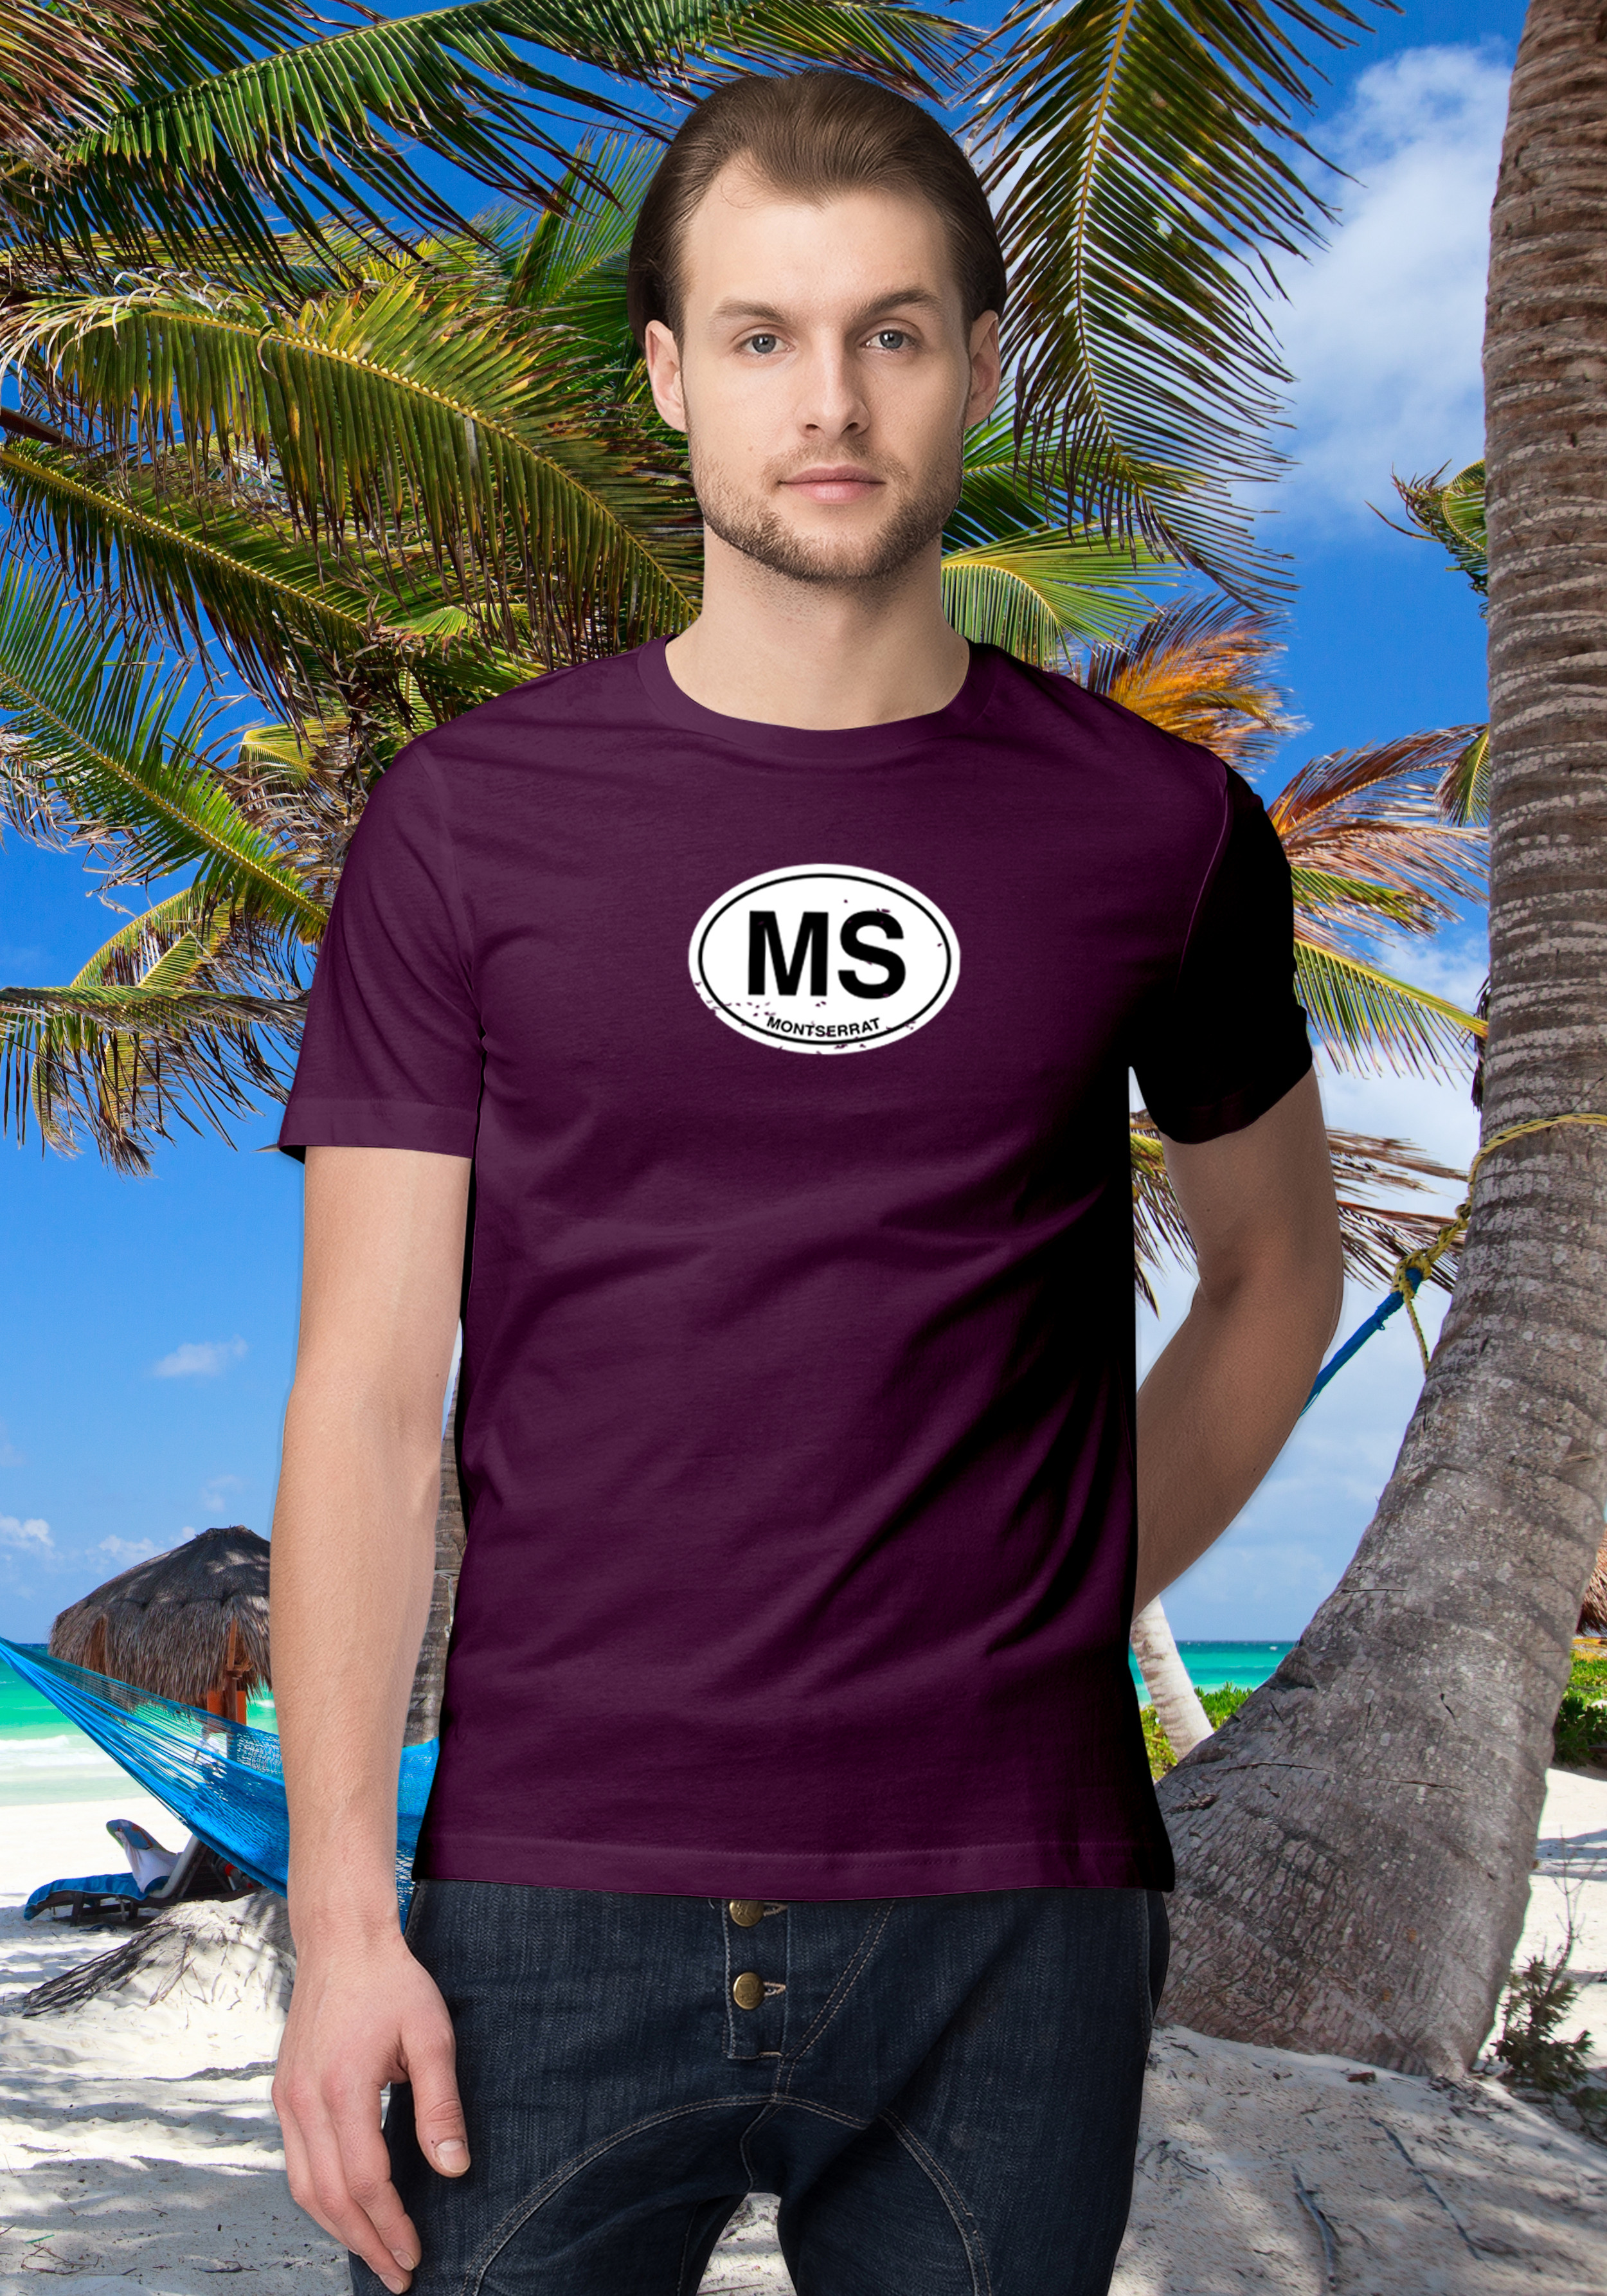 Montserrat Men's Classic T-Shirt Souvenirs - My Destination Location